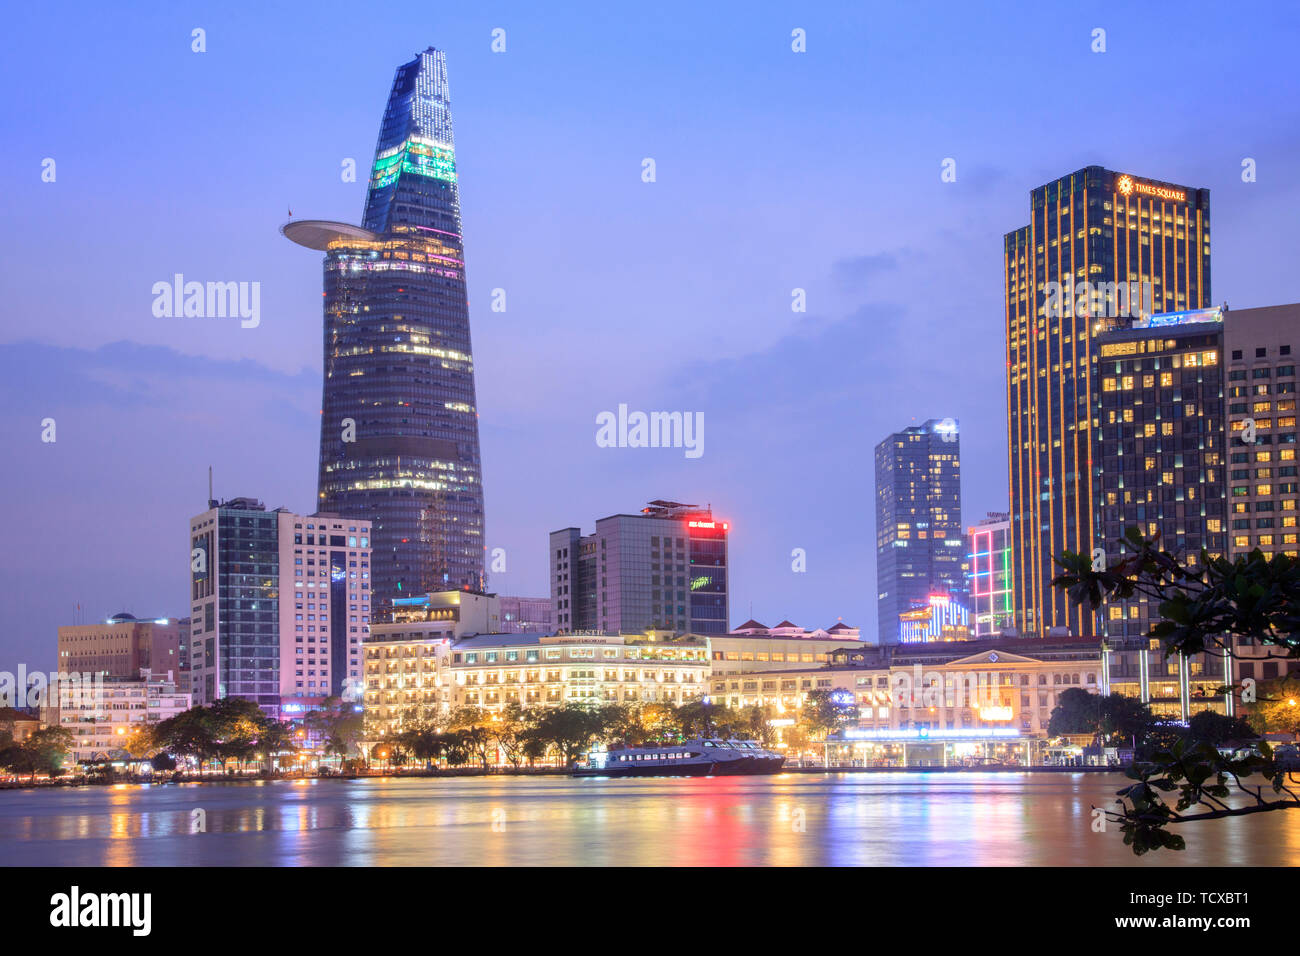 Lo skyline del quartiere finanziario centrale della città di ho Chi Minh che mostra la torre Bitexco e il fiume Saigon, ho Chi Minh City, Vietnam Foto Stock